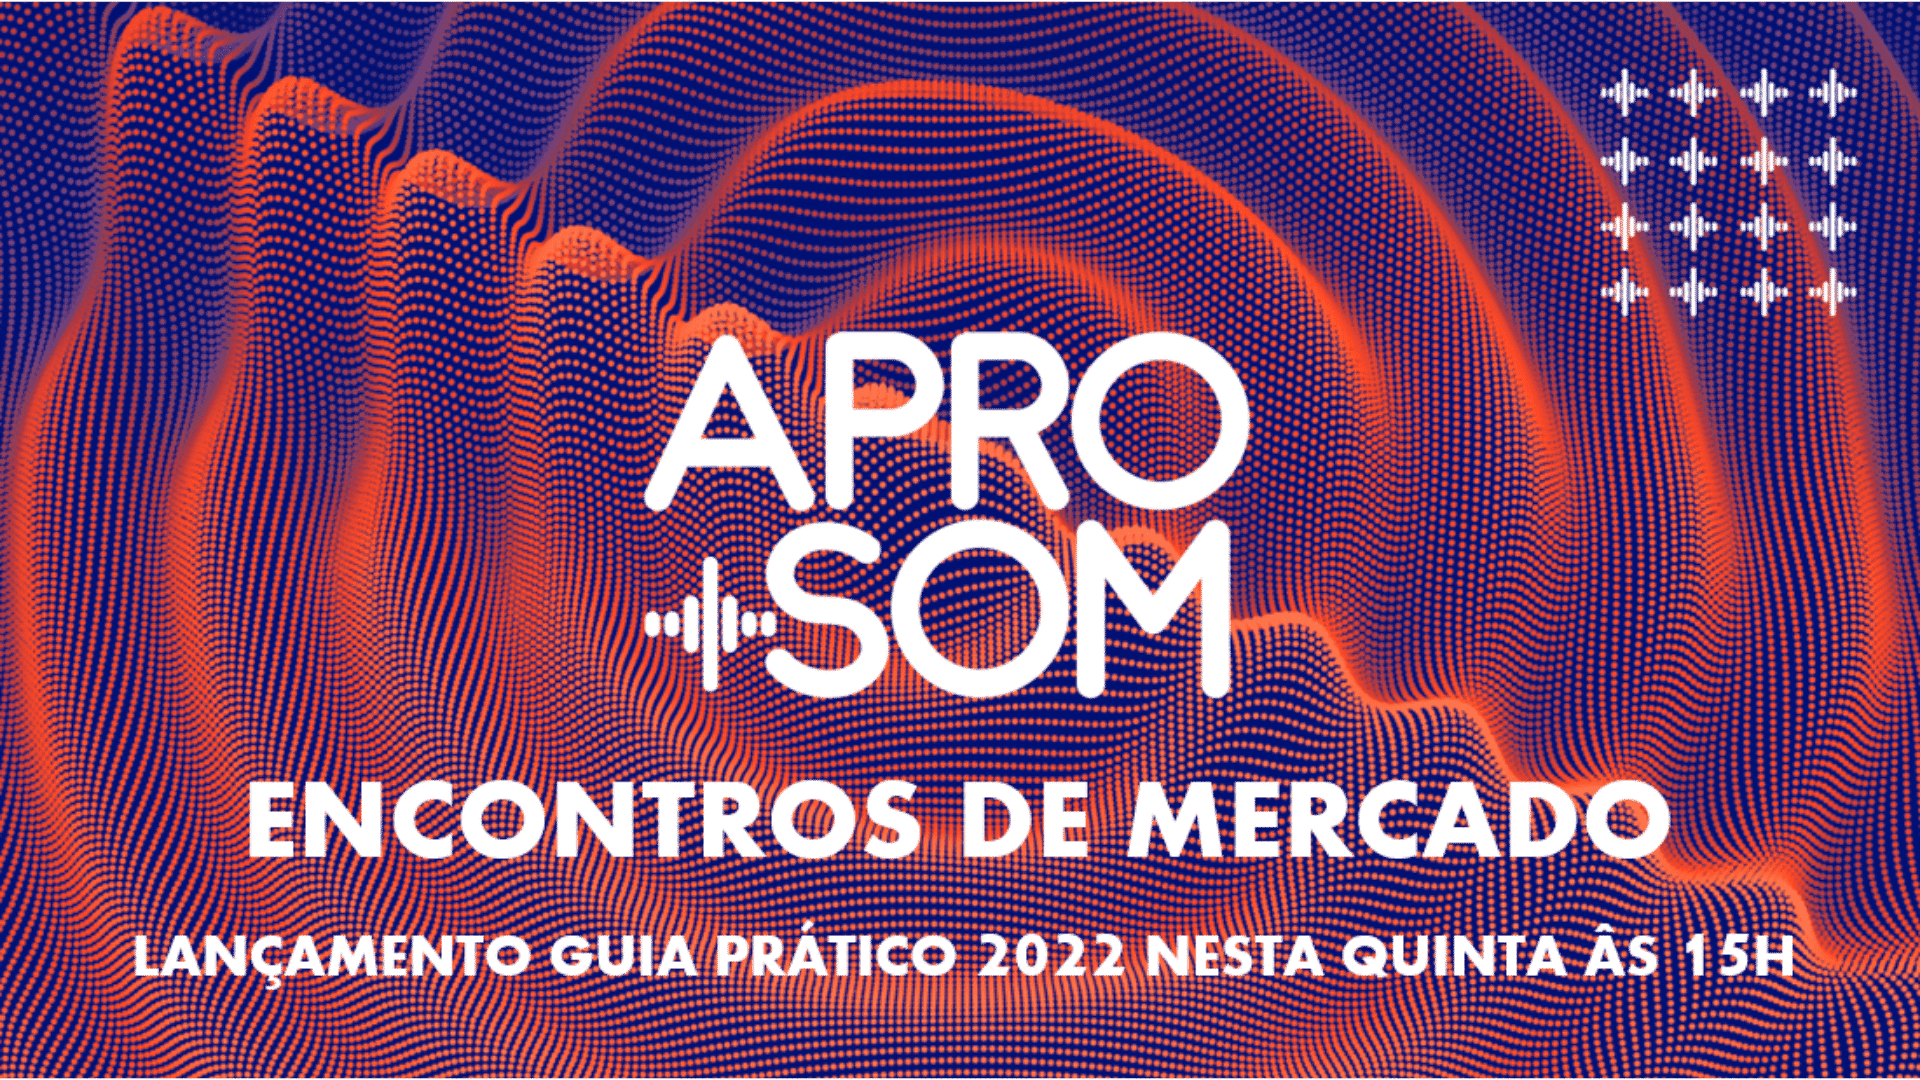 APRO+SOM lança Guia Prático para o mercado de áudio publicitário